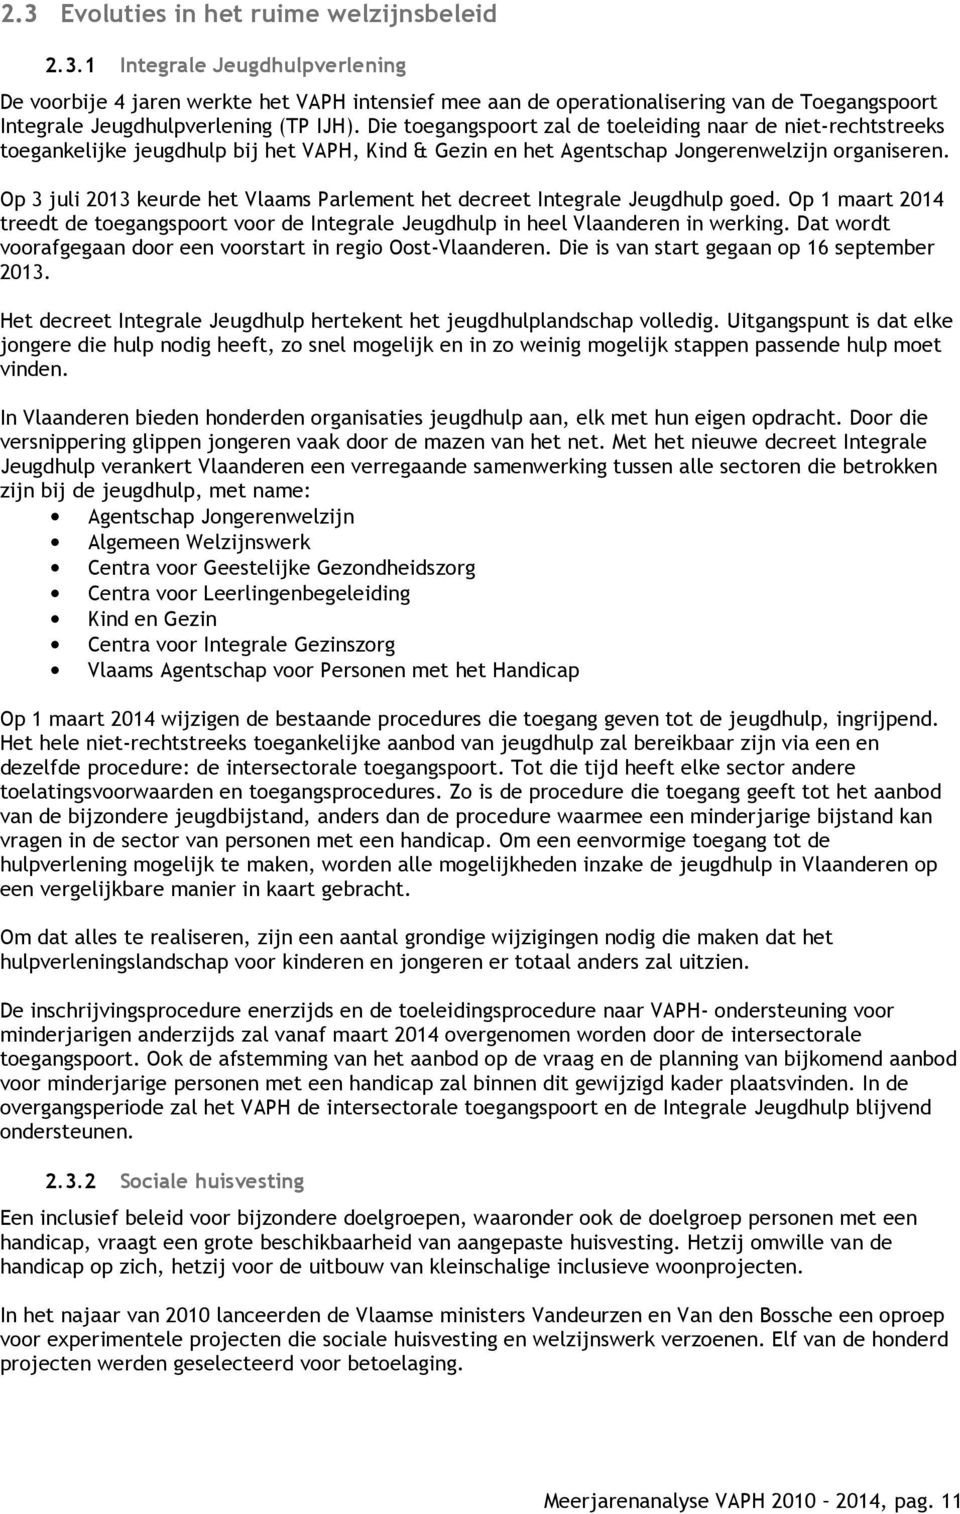 Op 3 juli 2013 keurde het Vlaams Parlement het decreet Integrale Jeugdhulp goed. Op 1 maart 2014 treedt de toegangspoort voor de Integrale Jeugdhulp in heel Vlaanderen in werking.